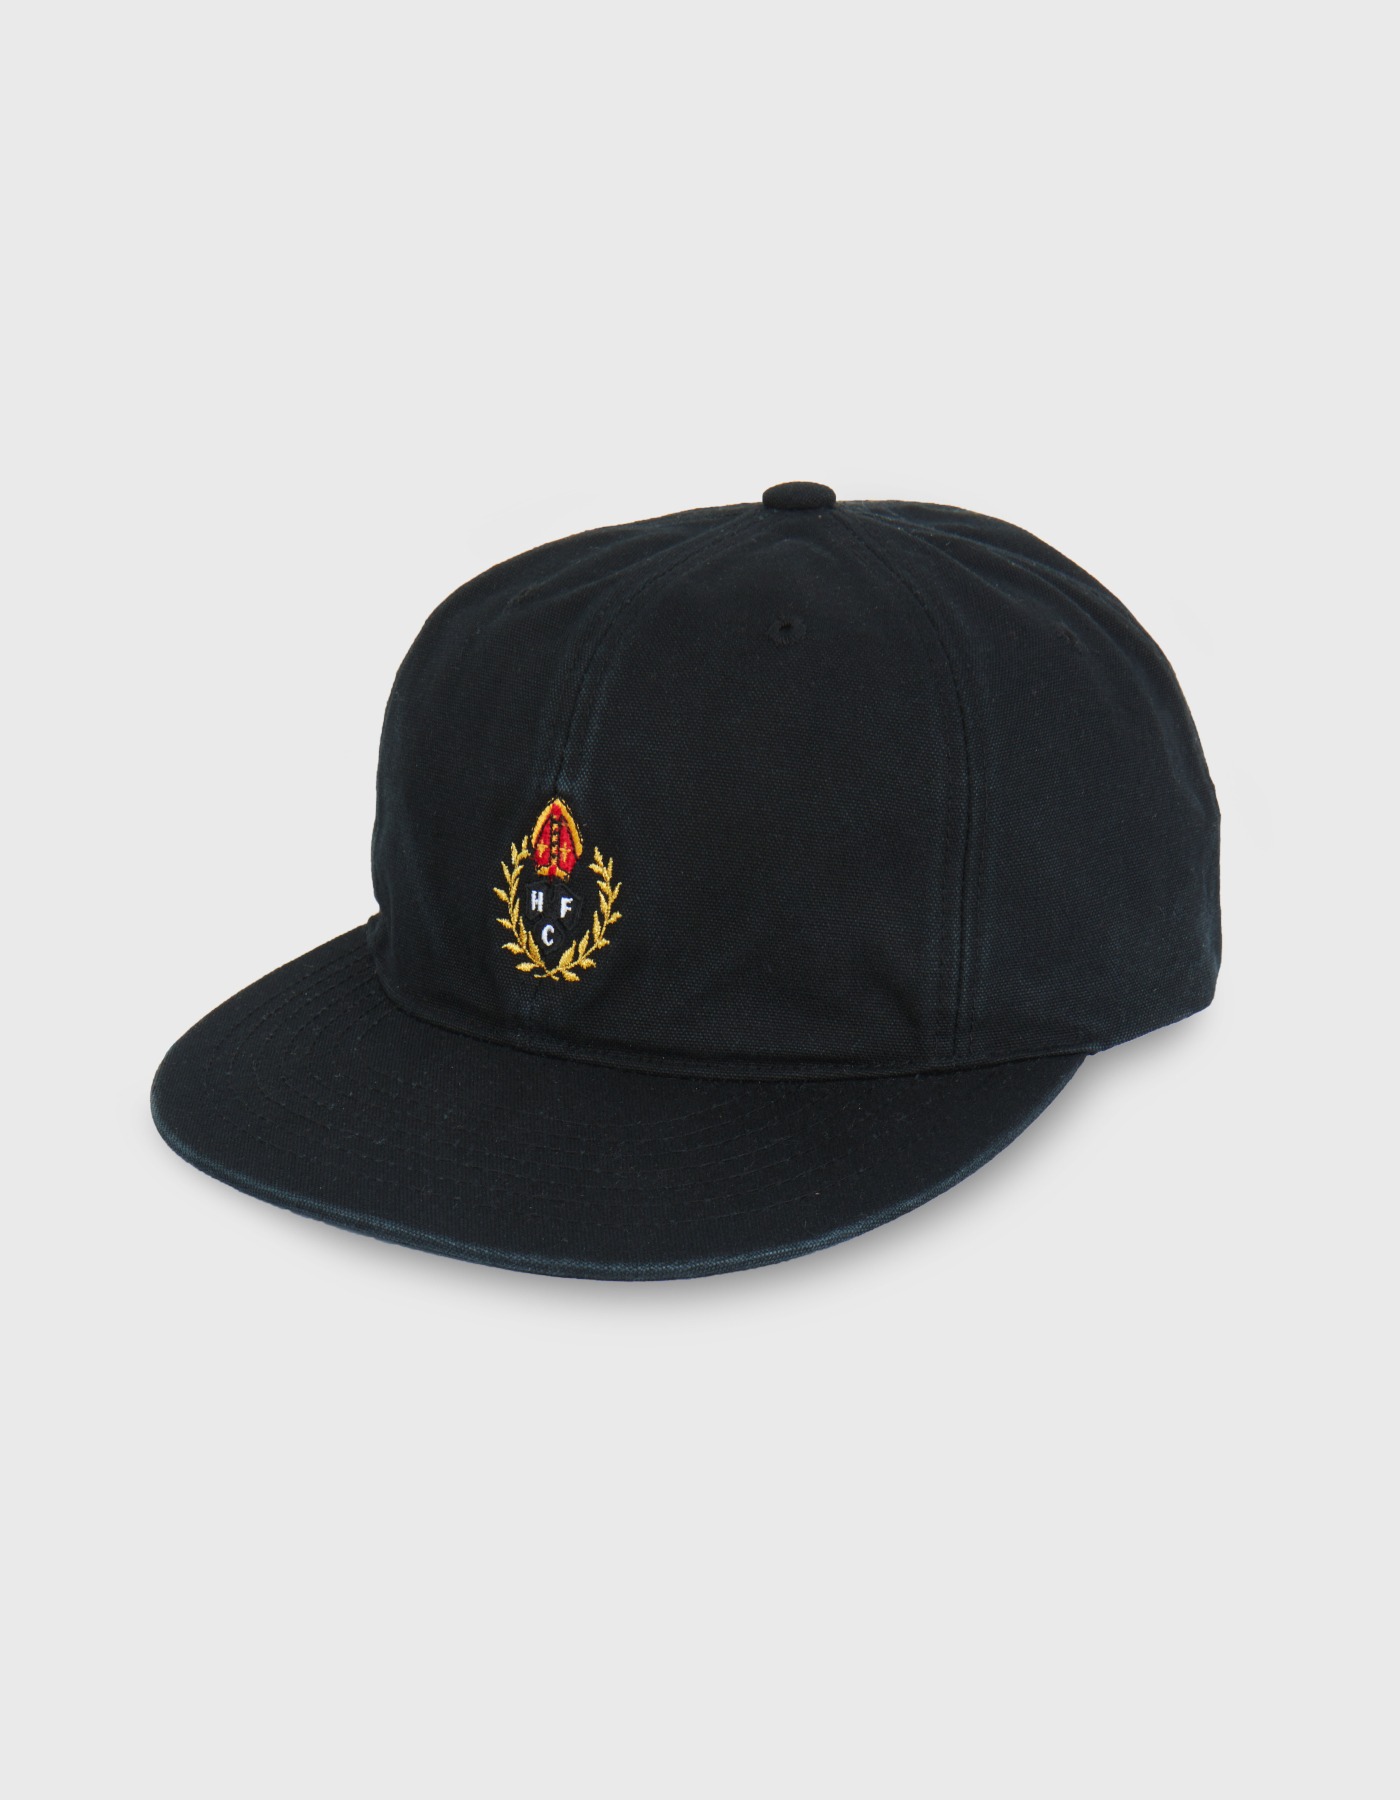 HFC CREST 6 PANEL CAP/ Black